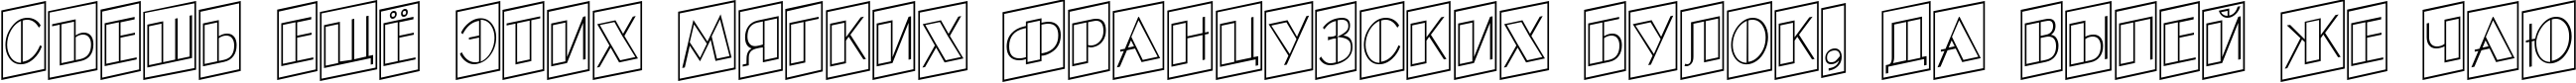 Пример написания шрифтом a_BentTitulCmUpOtlNr текста на русском